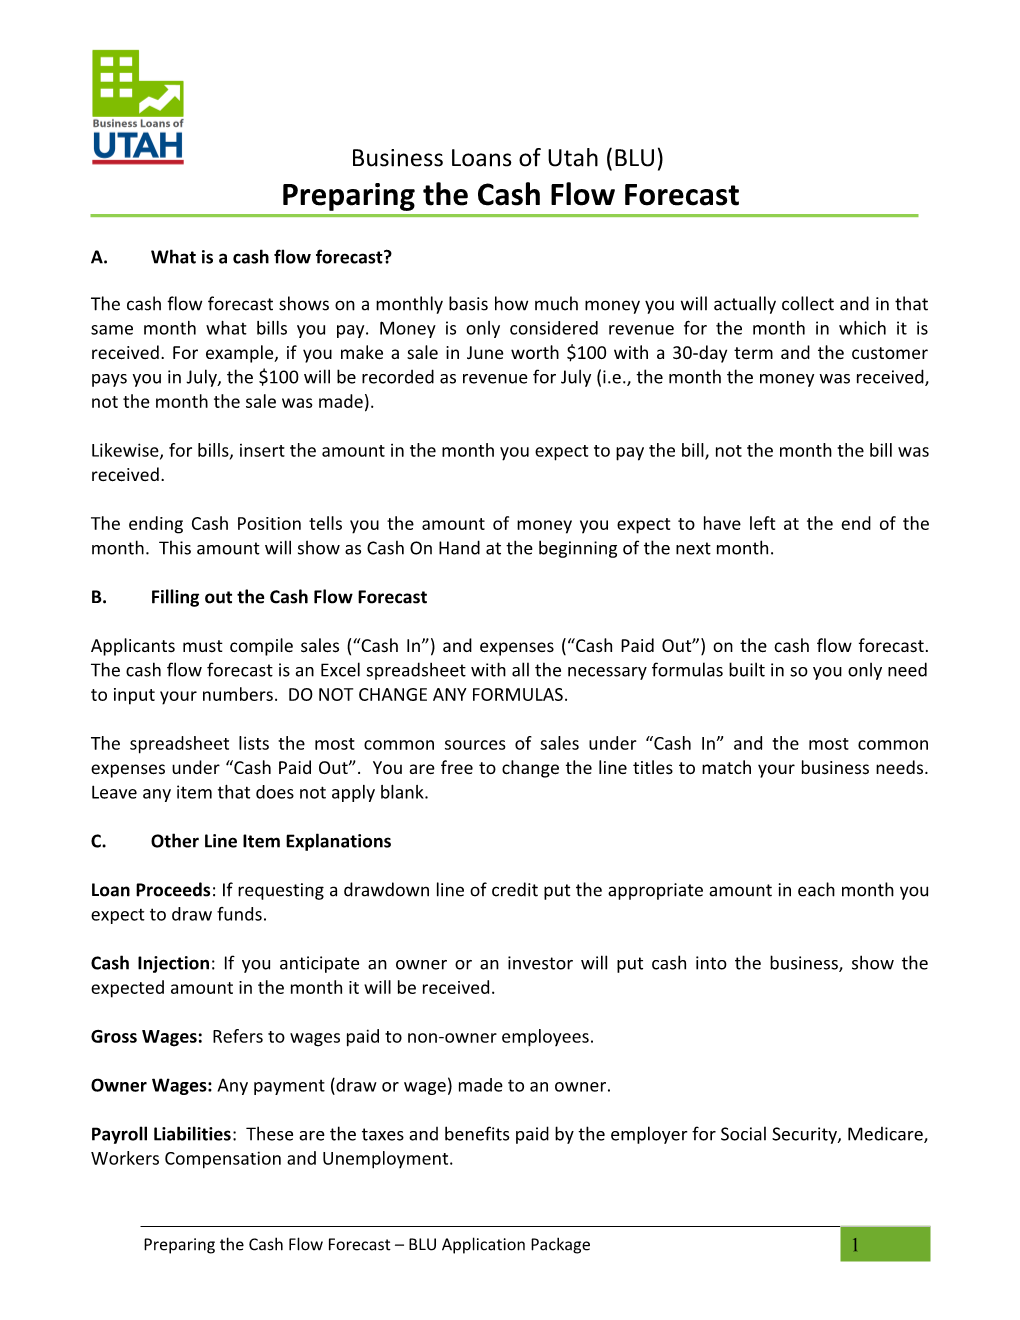 Preparing the Cash Flow Forecast